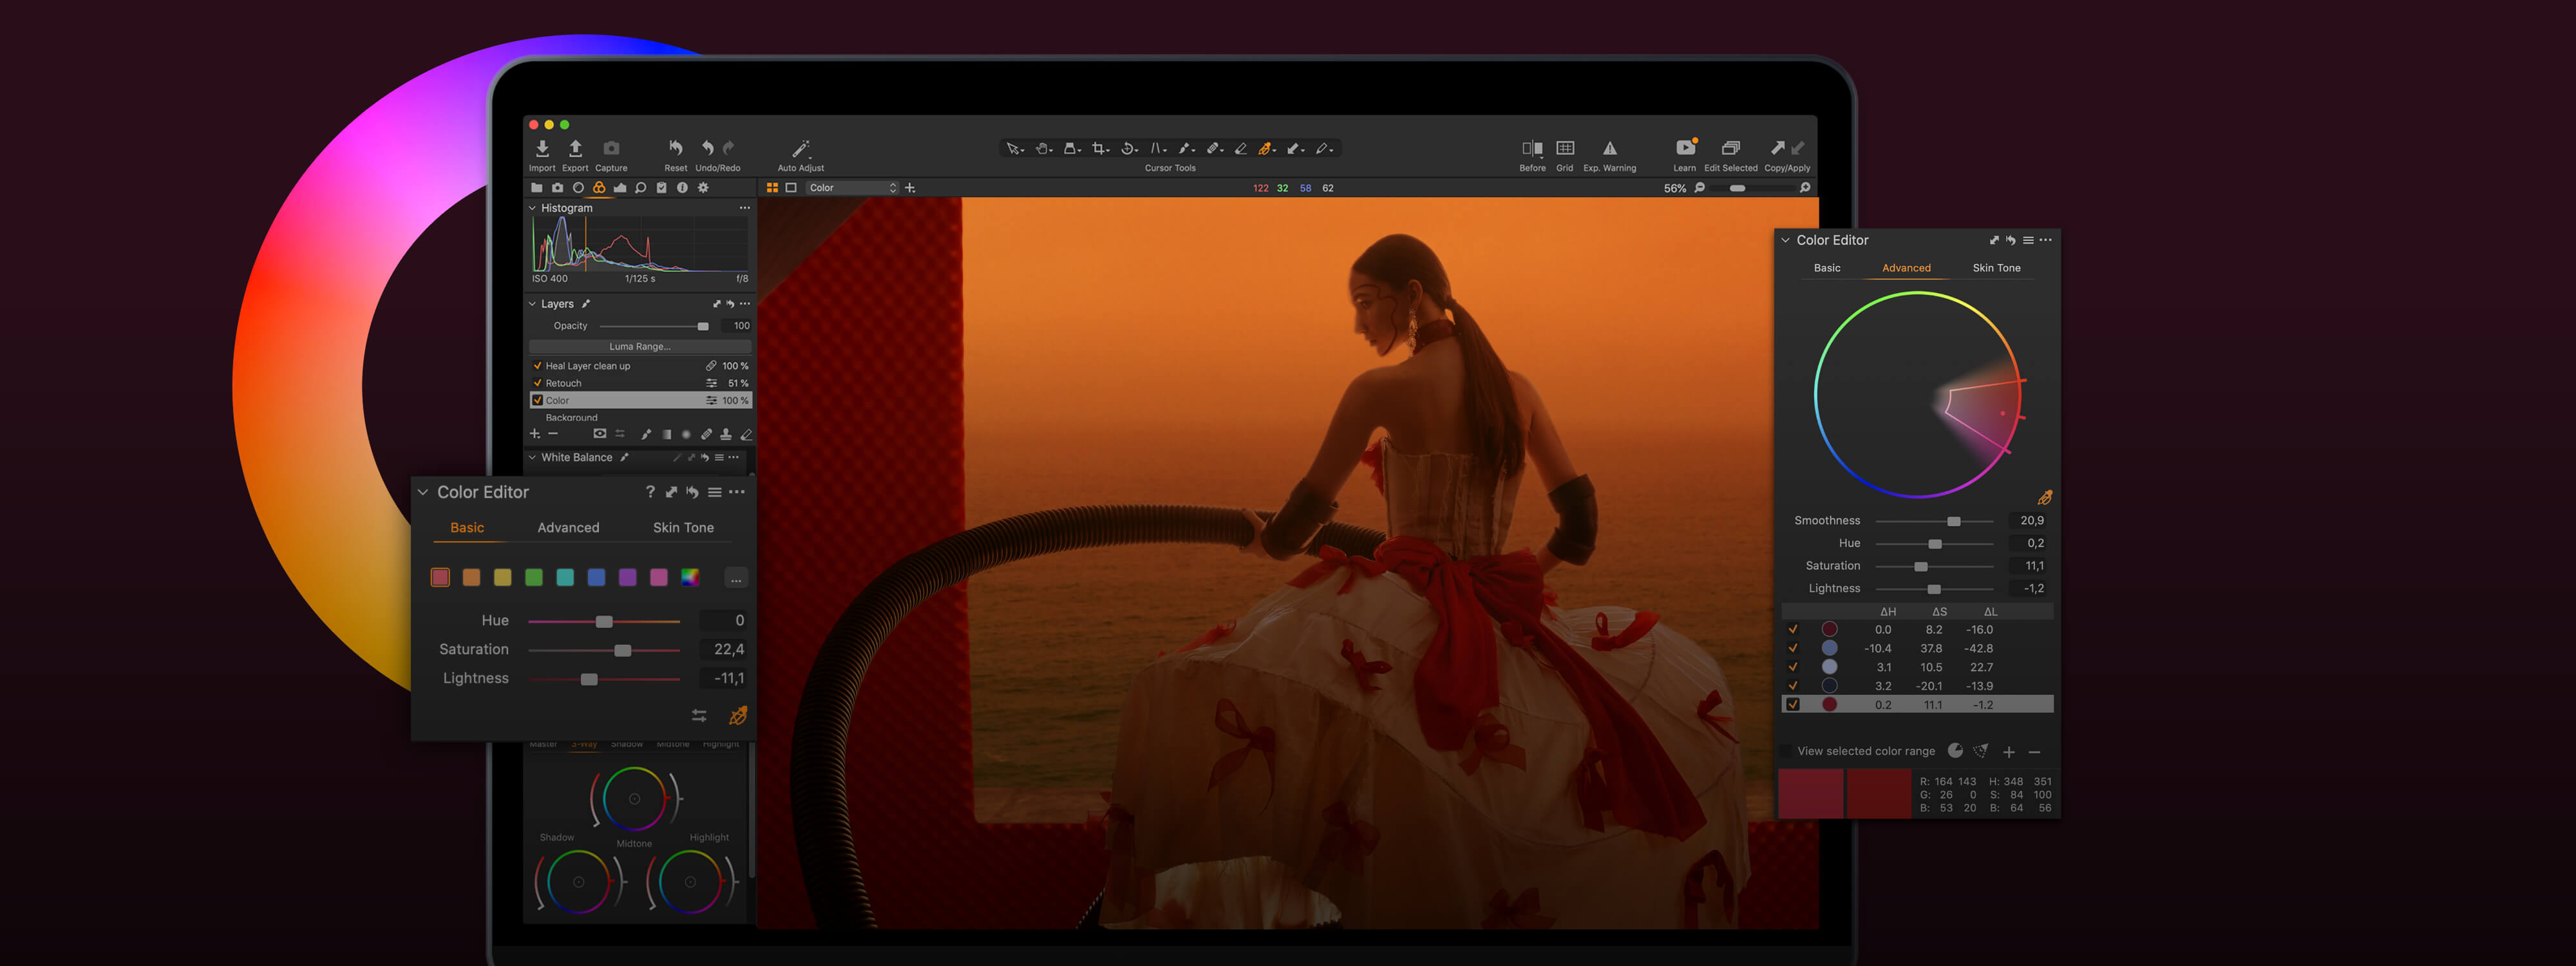 Capture One 23 Pro 16.1.0.126 Mac 中文破解版 强大的RAW图像编辑工具